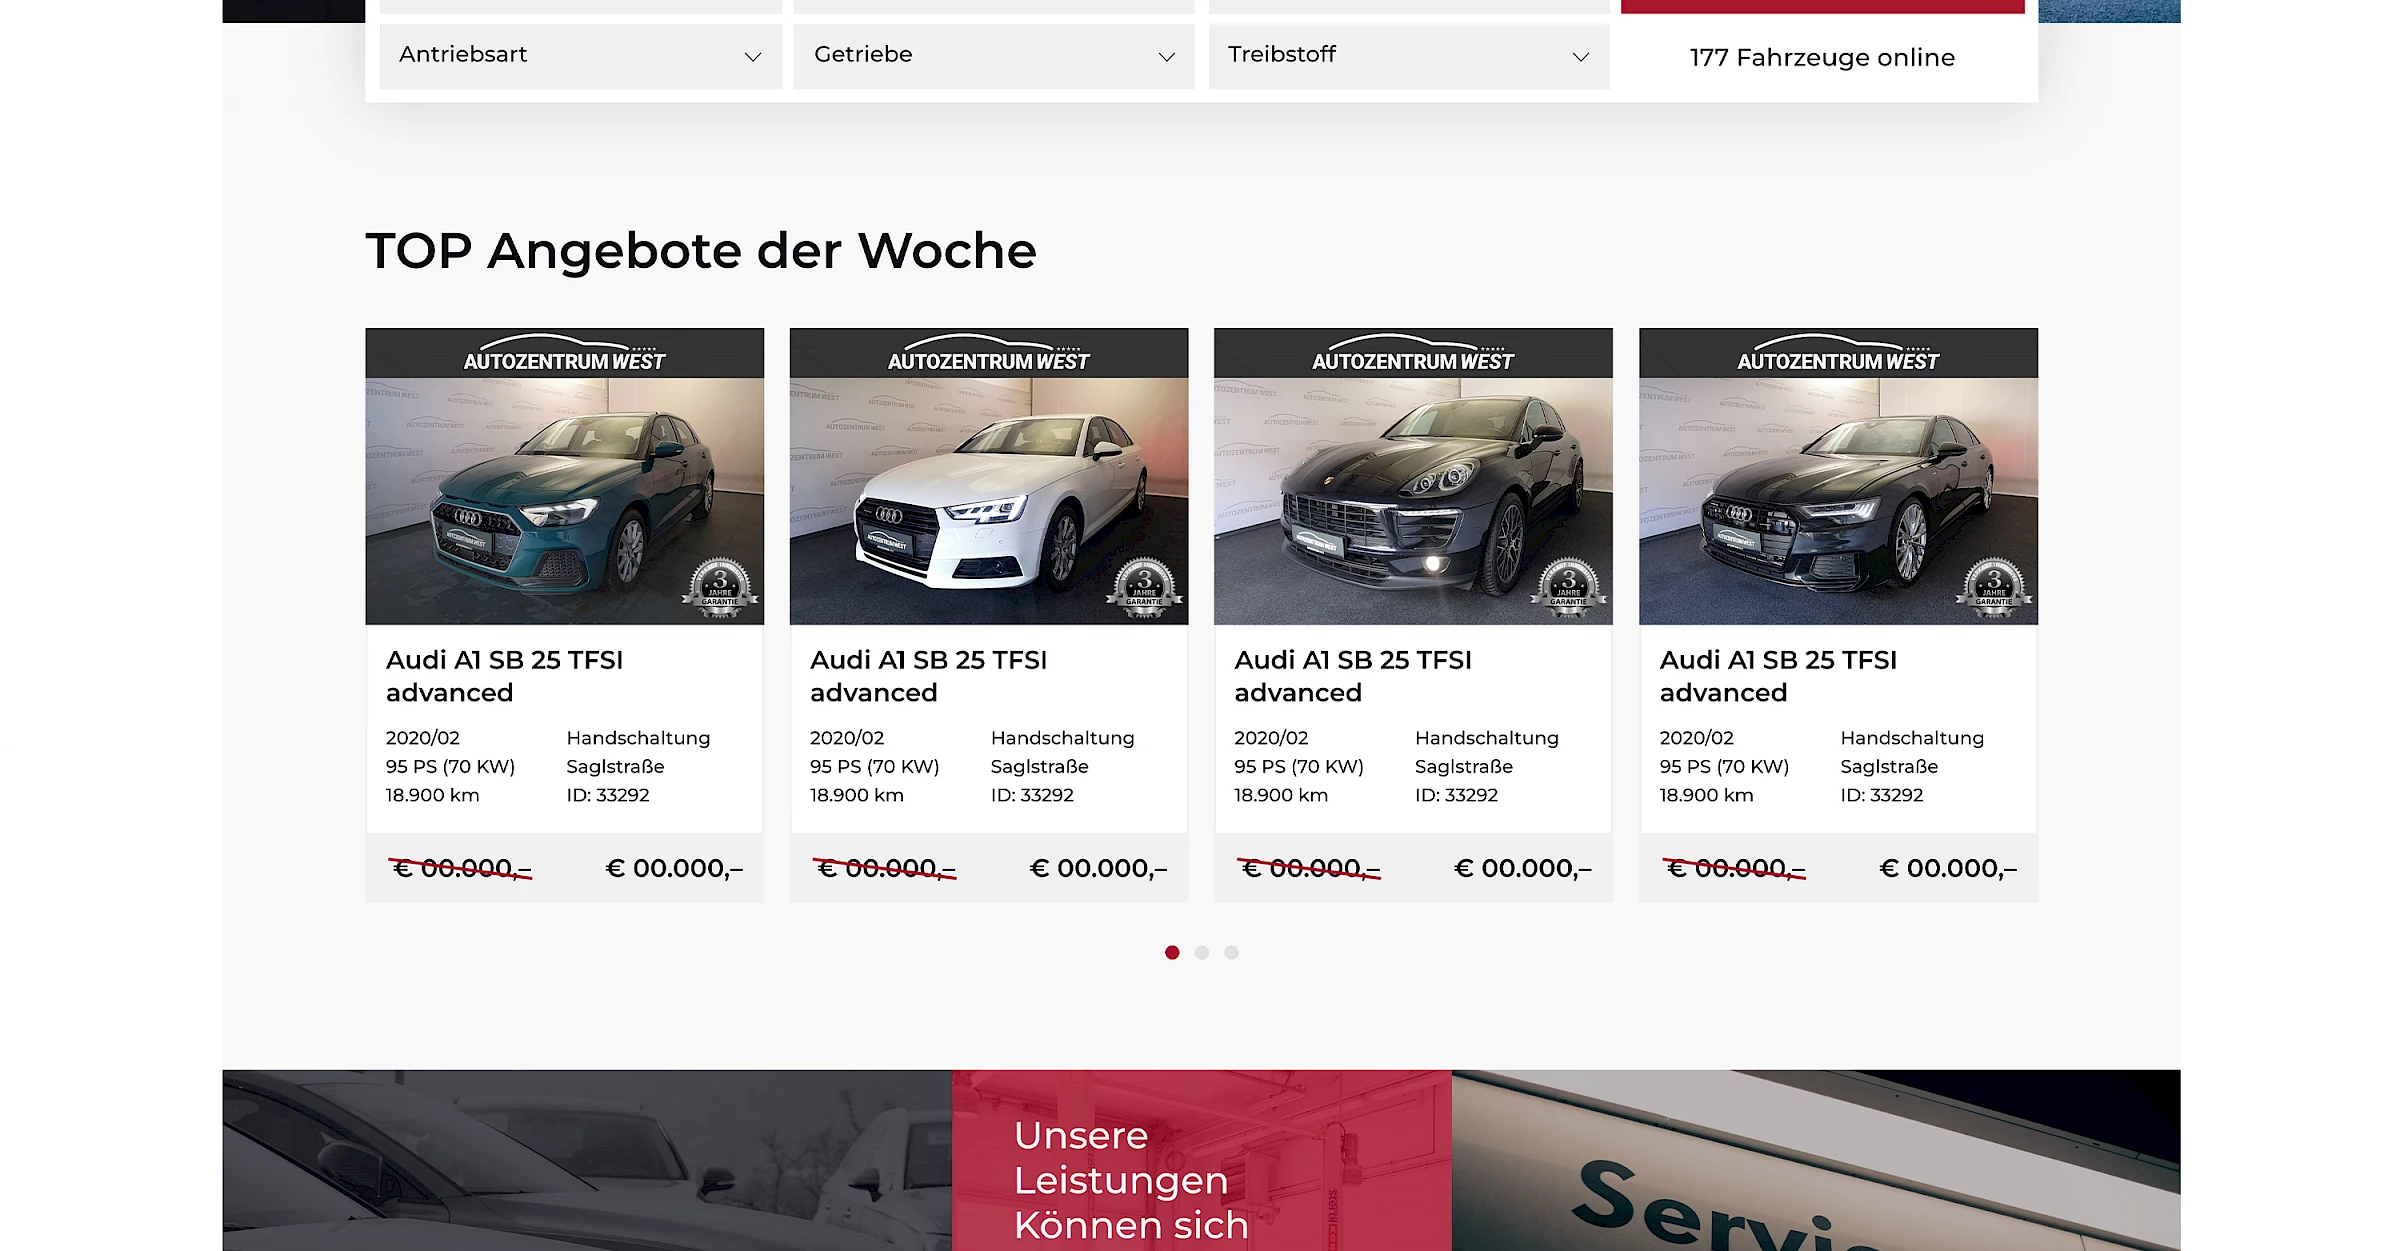 Webdesign der Website autozentrum-west.at, designed und programmiert von Buerostark Werbeagentur in Telfs